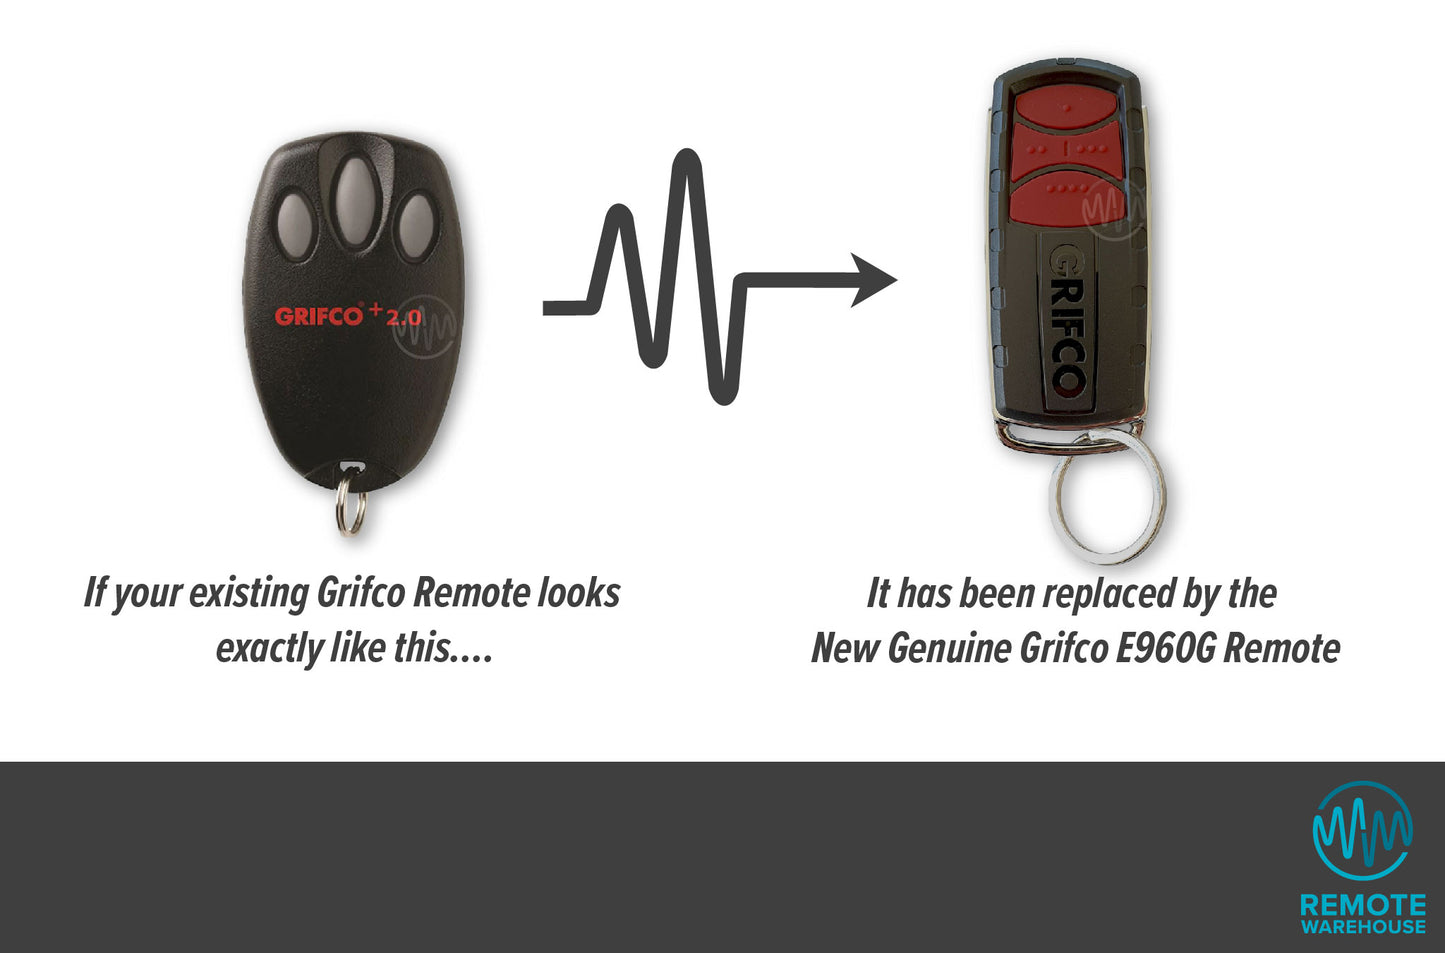 Grifco +2.0 E945G Garage & Gate Remote